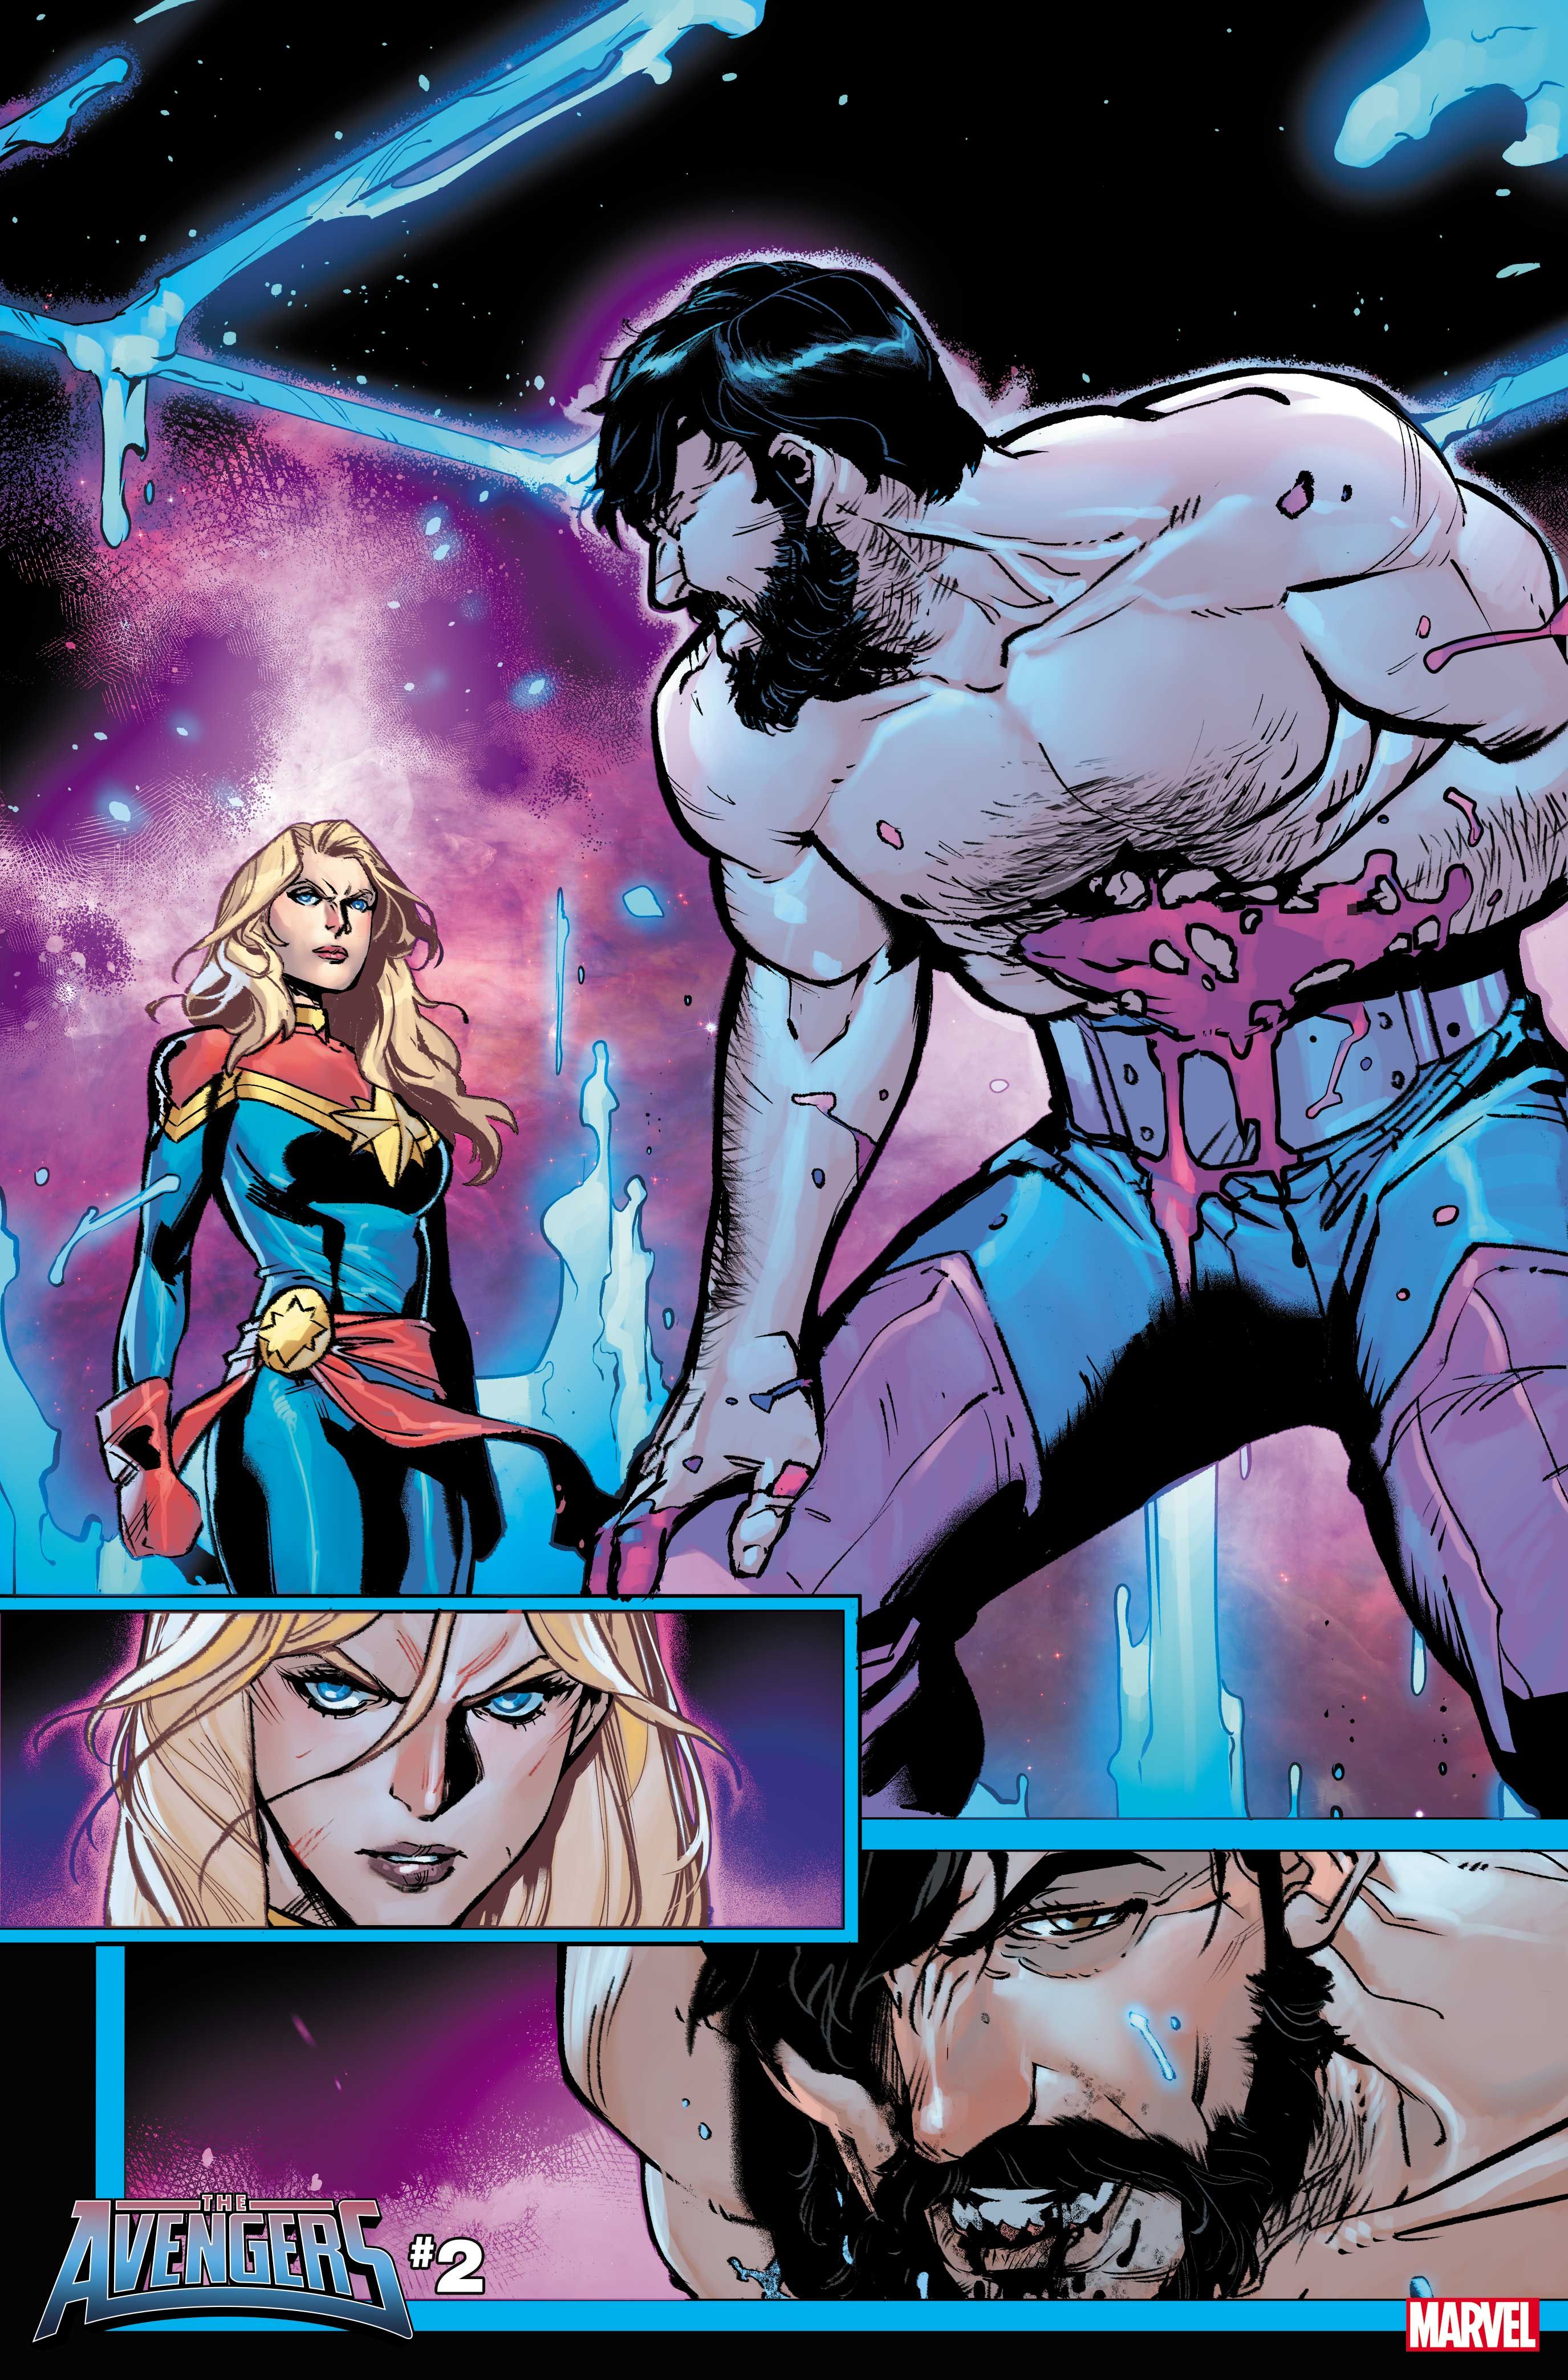 Captain Marvel faces a bleeding man in Avengers 2